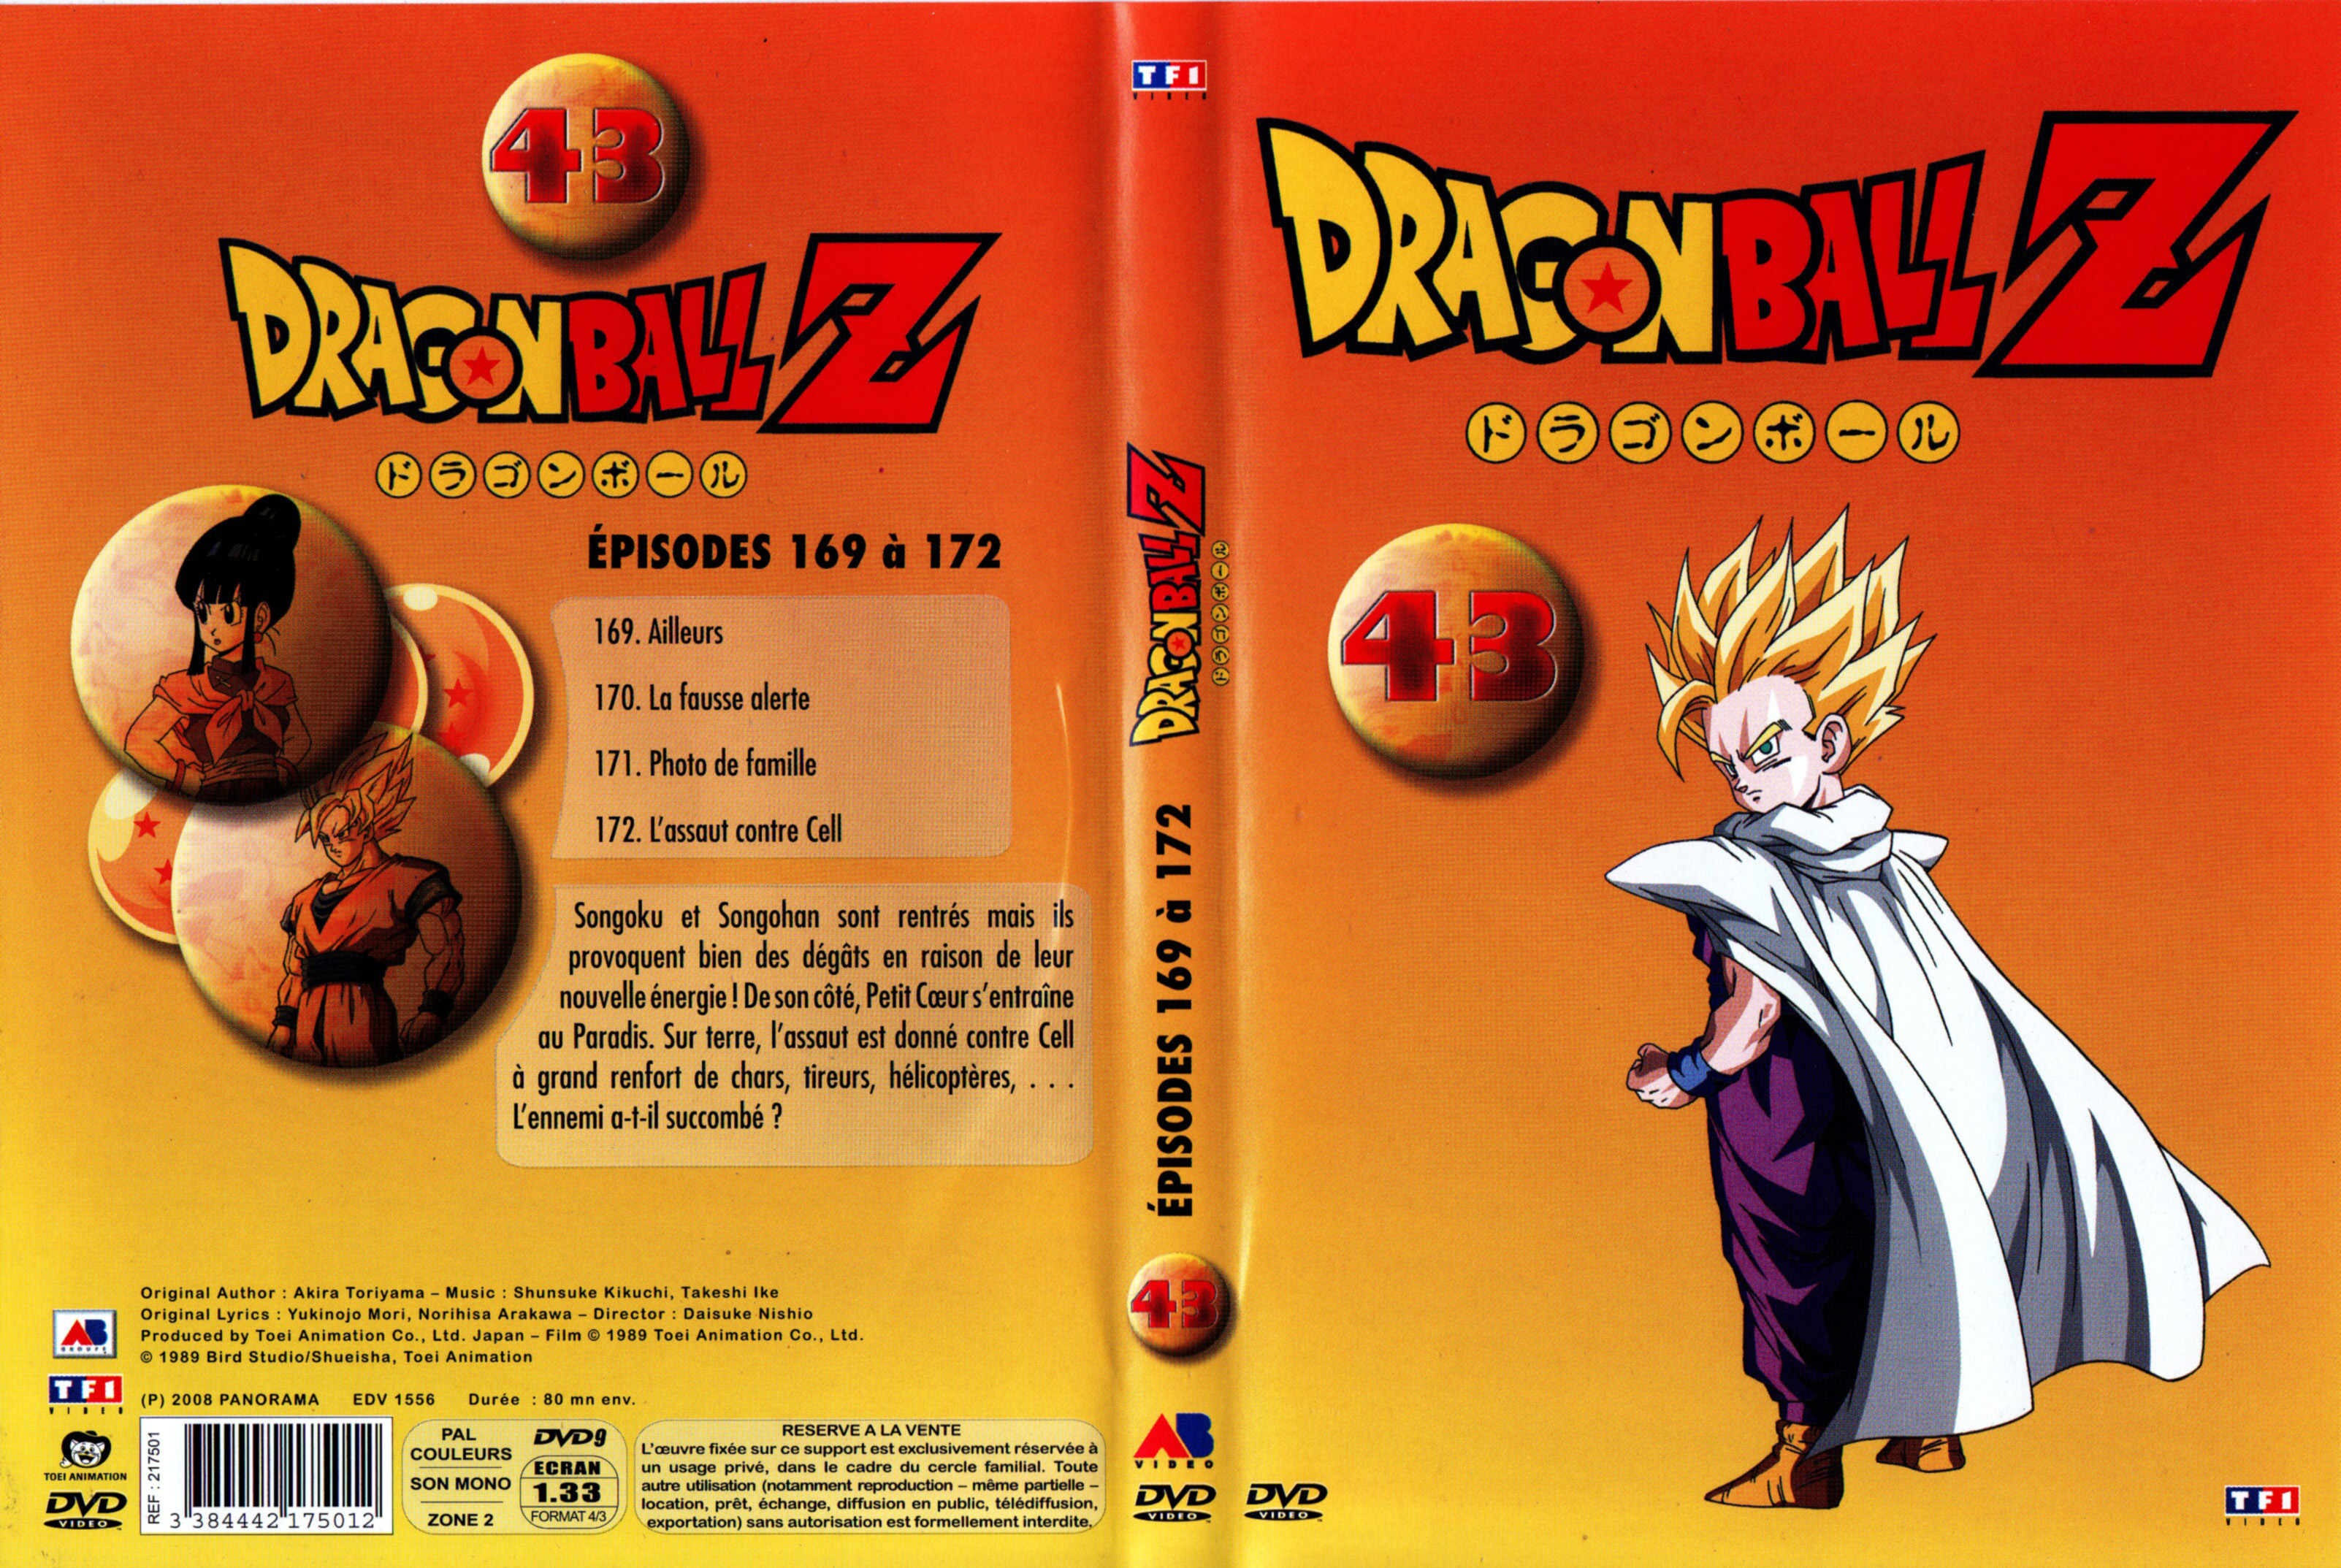 Jaquette DVD Dragon Ball Z vol 43 v2